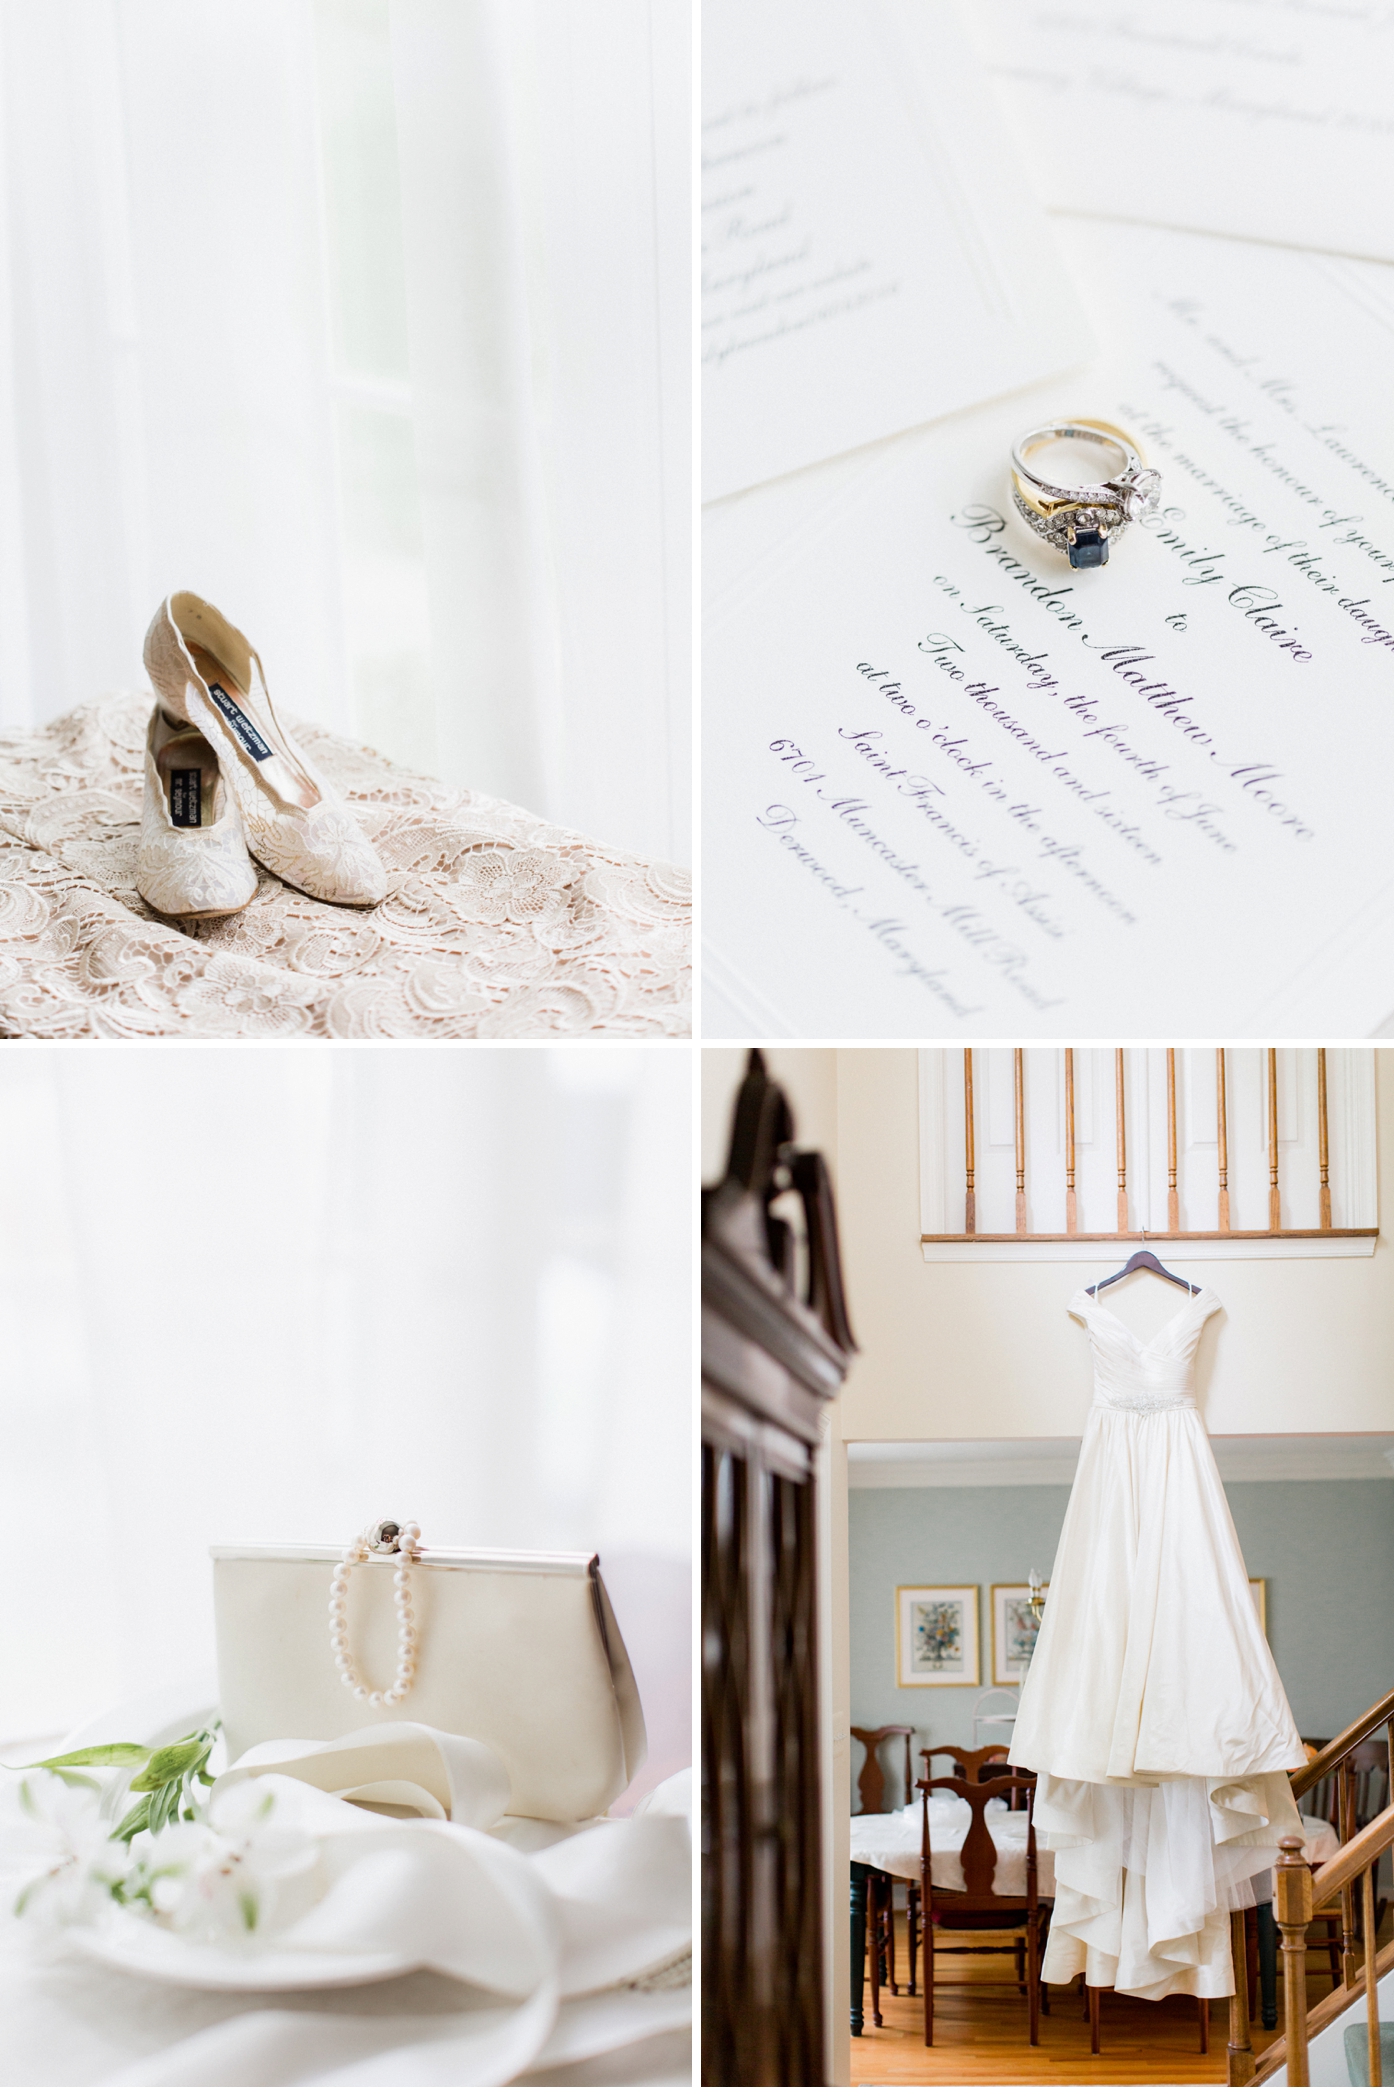 The bride wore her mother's vintage Steward Weitzman shoes on her wedding day | Kentland Mansion Wedding